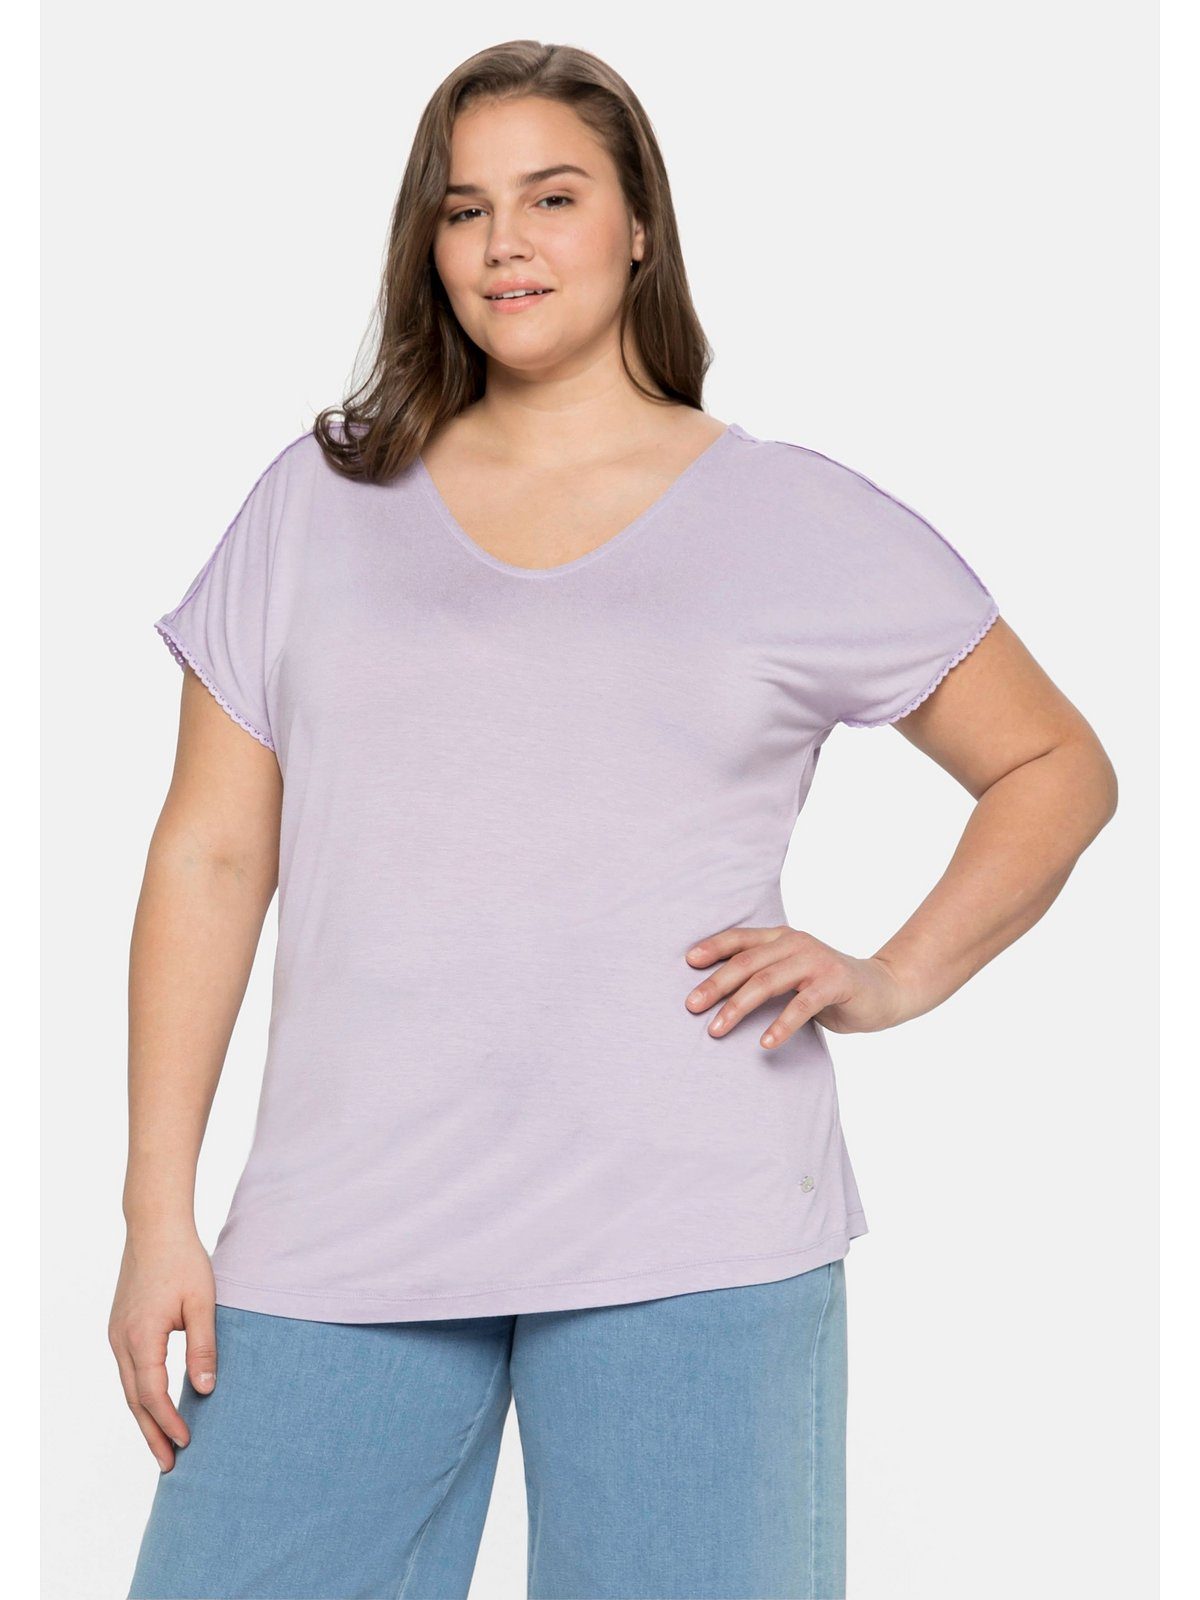 Neu eingetroffene Artikel Sheego T-Shirt Große Größen Schulternaht lavendel Spitze an und mit Ärmeln